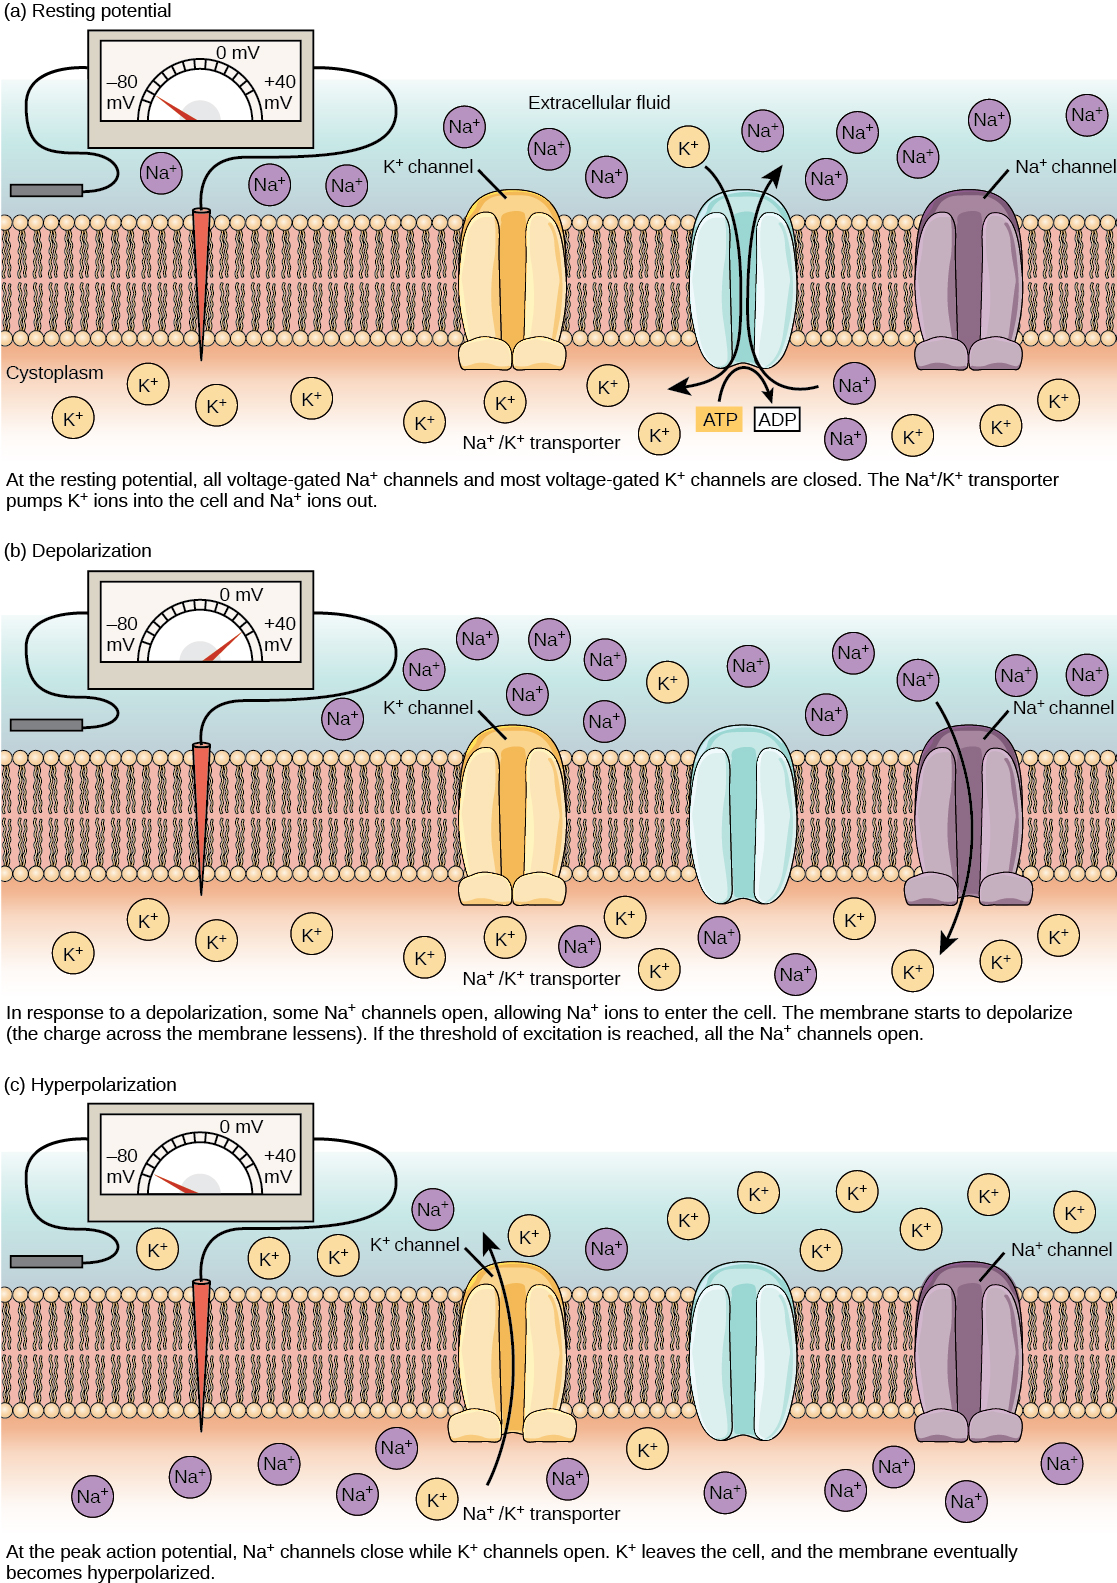 Le potentiel de la membrane de repos de moins 70 volts est maintenu par un transporteur sodium/potassium qui transporte les ions sodium hors de la cellule et les ions potassium à l'intérieur. Les canaux sodium et potassium dépendants de la tension sont fermés. En réponse à une impulsion nerveuse, certains canaux sodiques s'ouvrent, permettant aux ions sodium de pénétrer dans la cellule. La membrane commence à se dépolariser ; en d'autres termes, la charge à travers la membrane diminue. Si le potentiel de la membrane augmente jusqu'au seuil d'excitation, tous les canaux sodiques s'ouvrent. Au potentiel d'action maximal, les canaux potassiques s'ouvrent et les ions potassium quittent la cellule. La membrane finit par devenir hyperpolarisée.